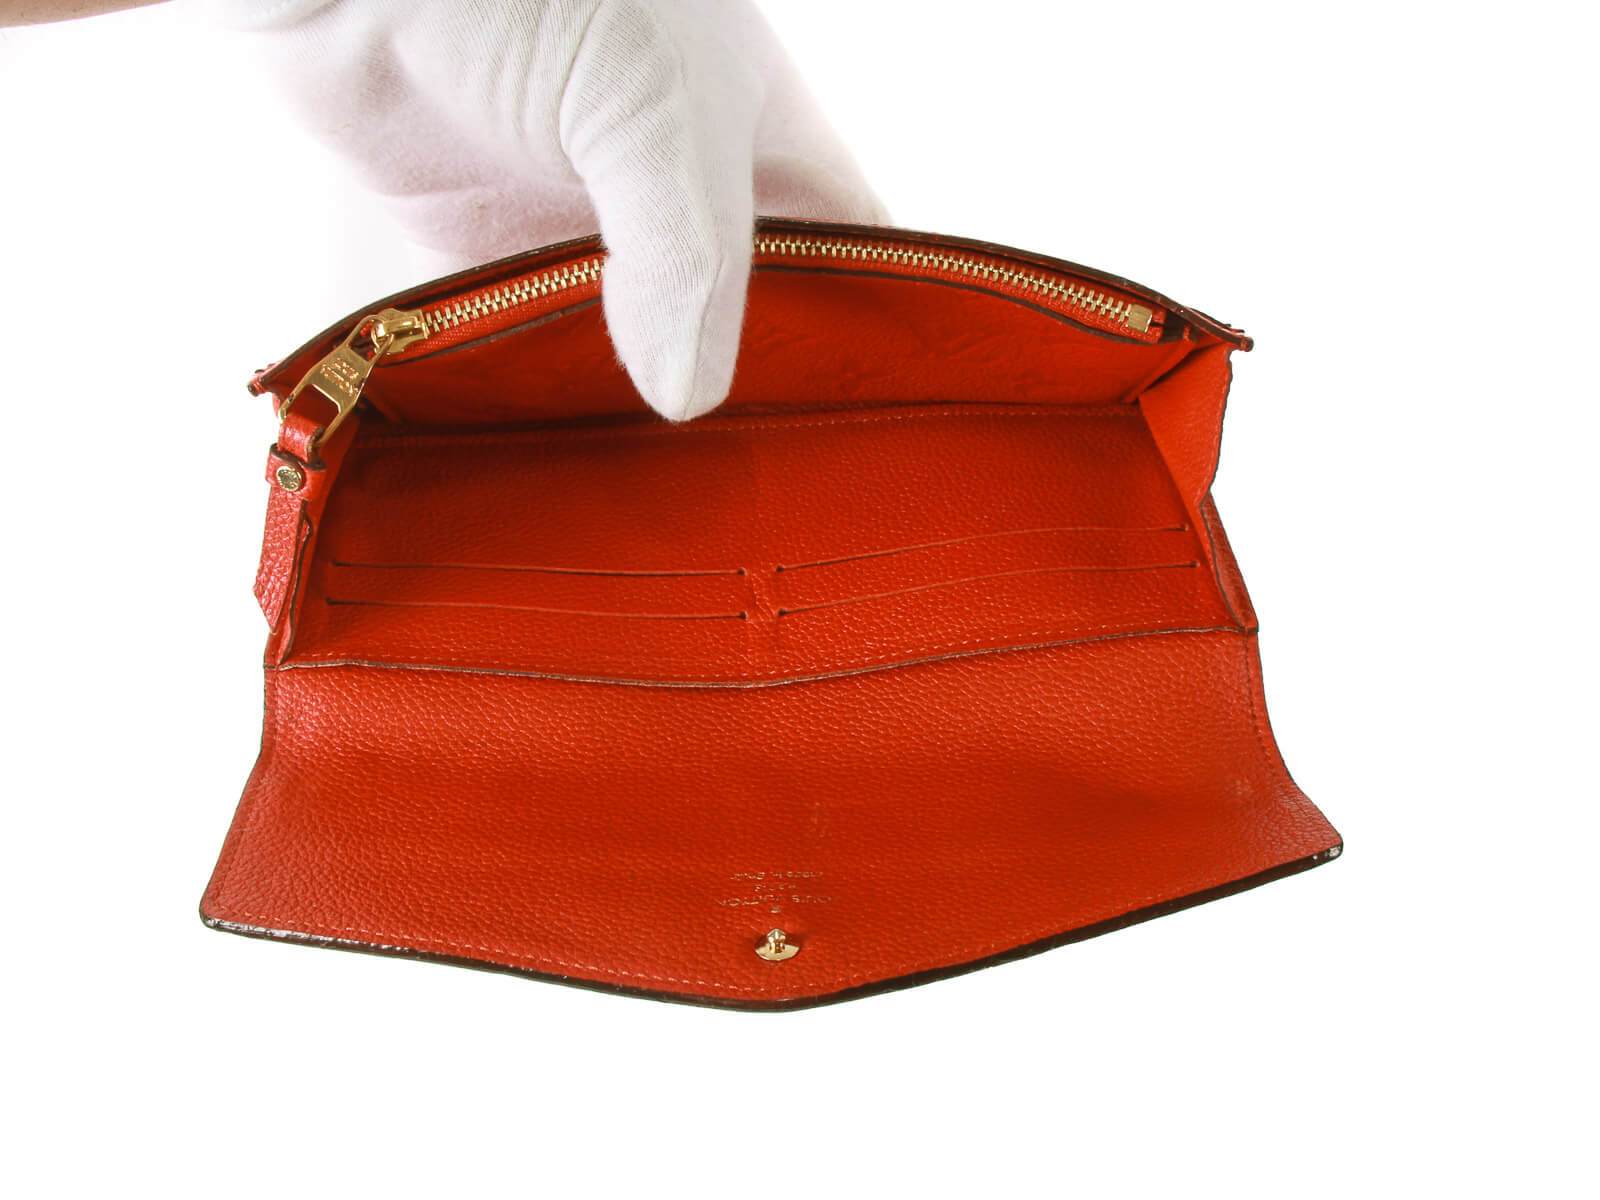 monogram empreinte leather wallets